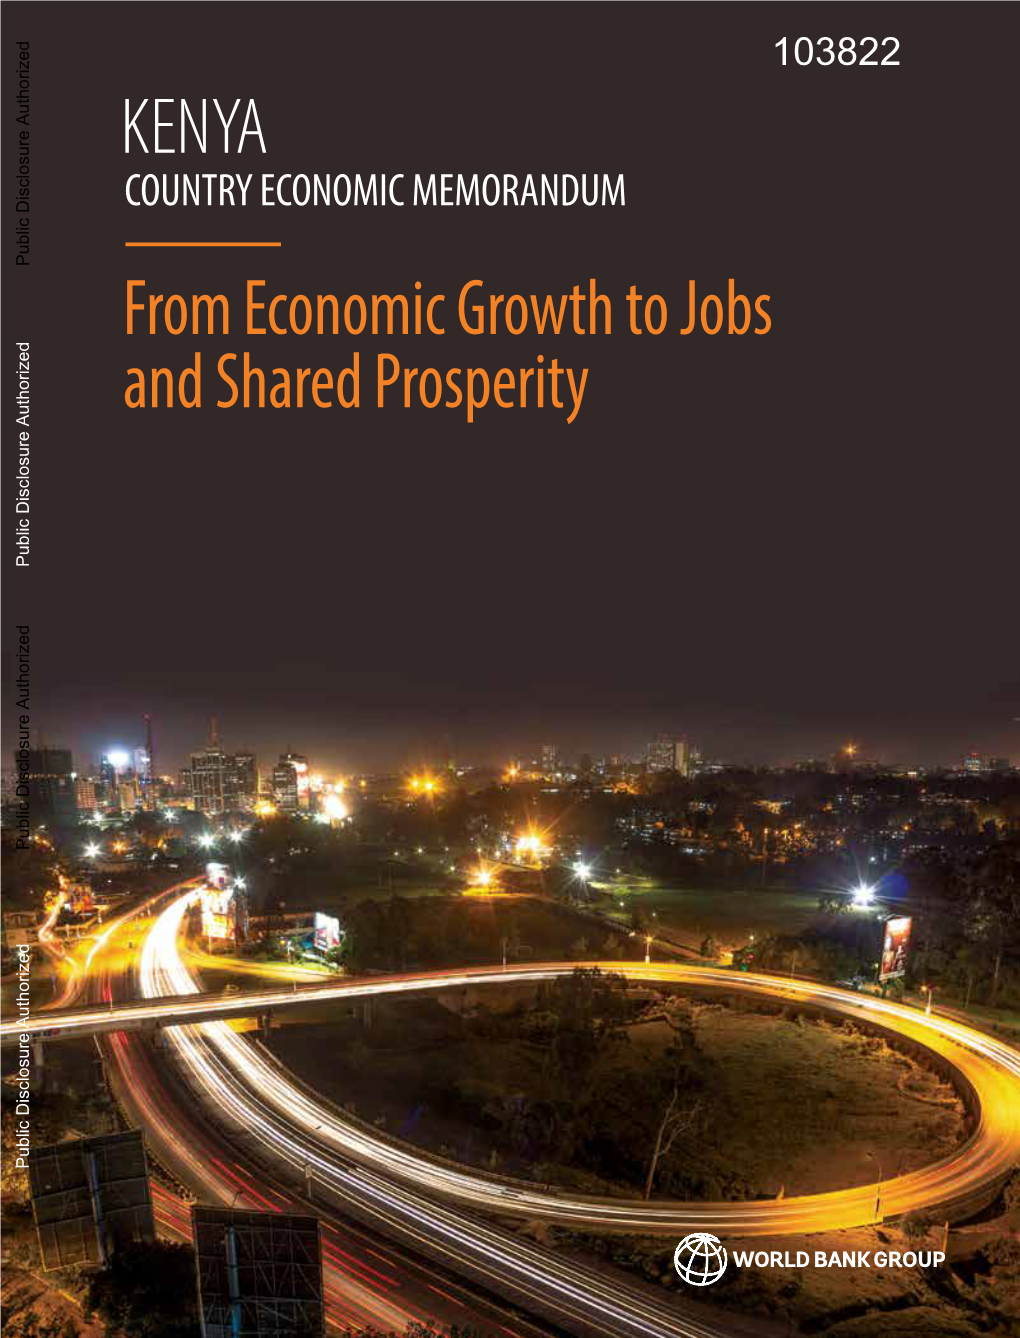 Kenya Country Economic Memorandum